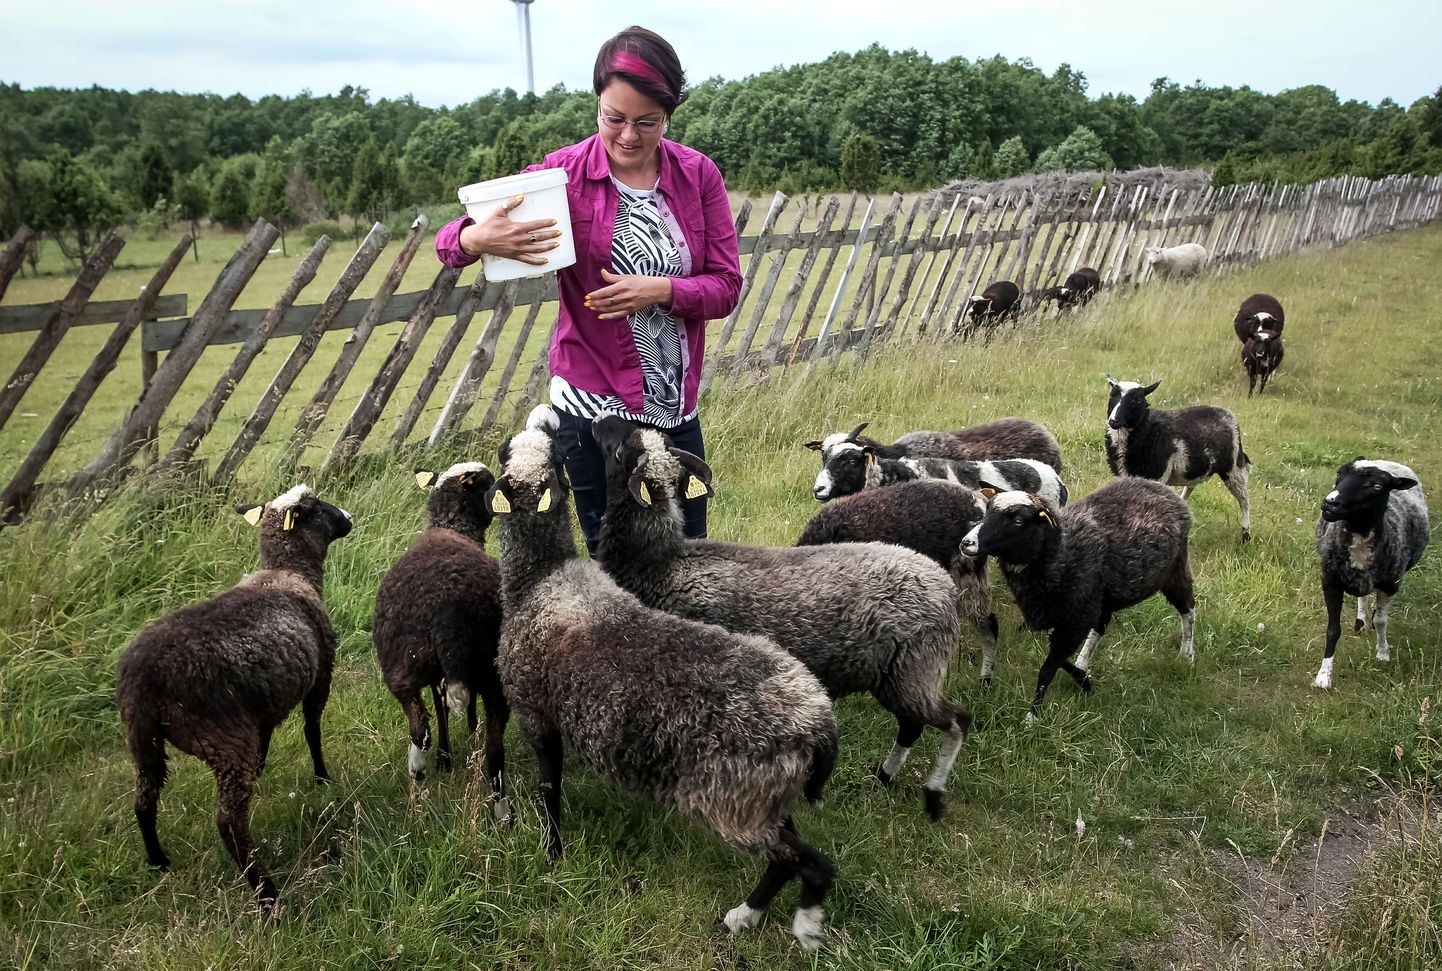 Kihnu maatõugu lambad Mikkeni lambatalus. Foto on illustreeriv.